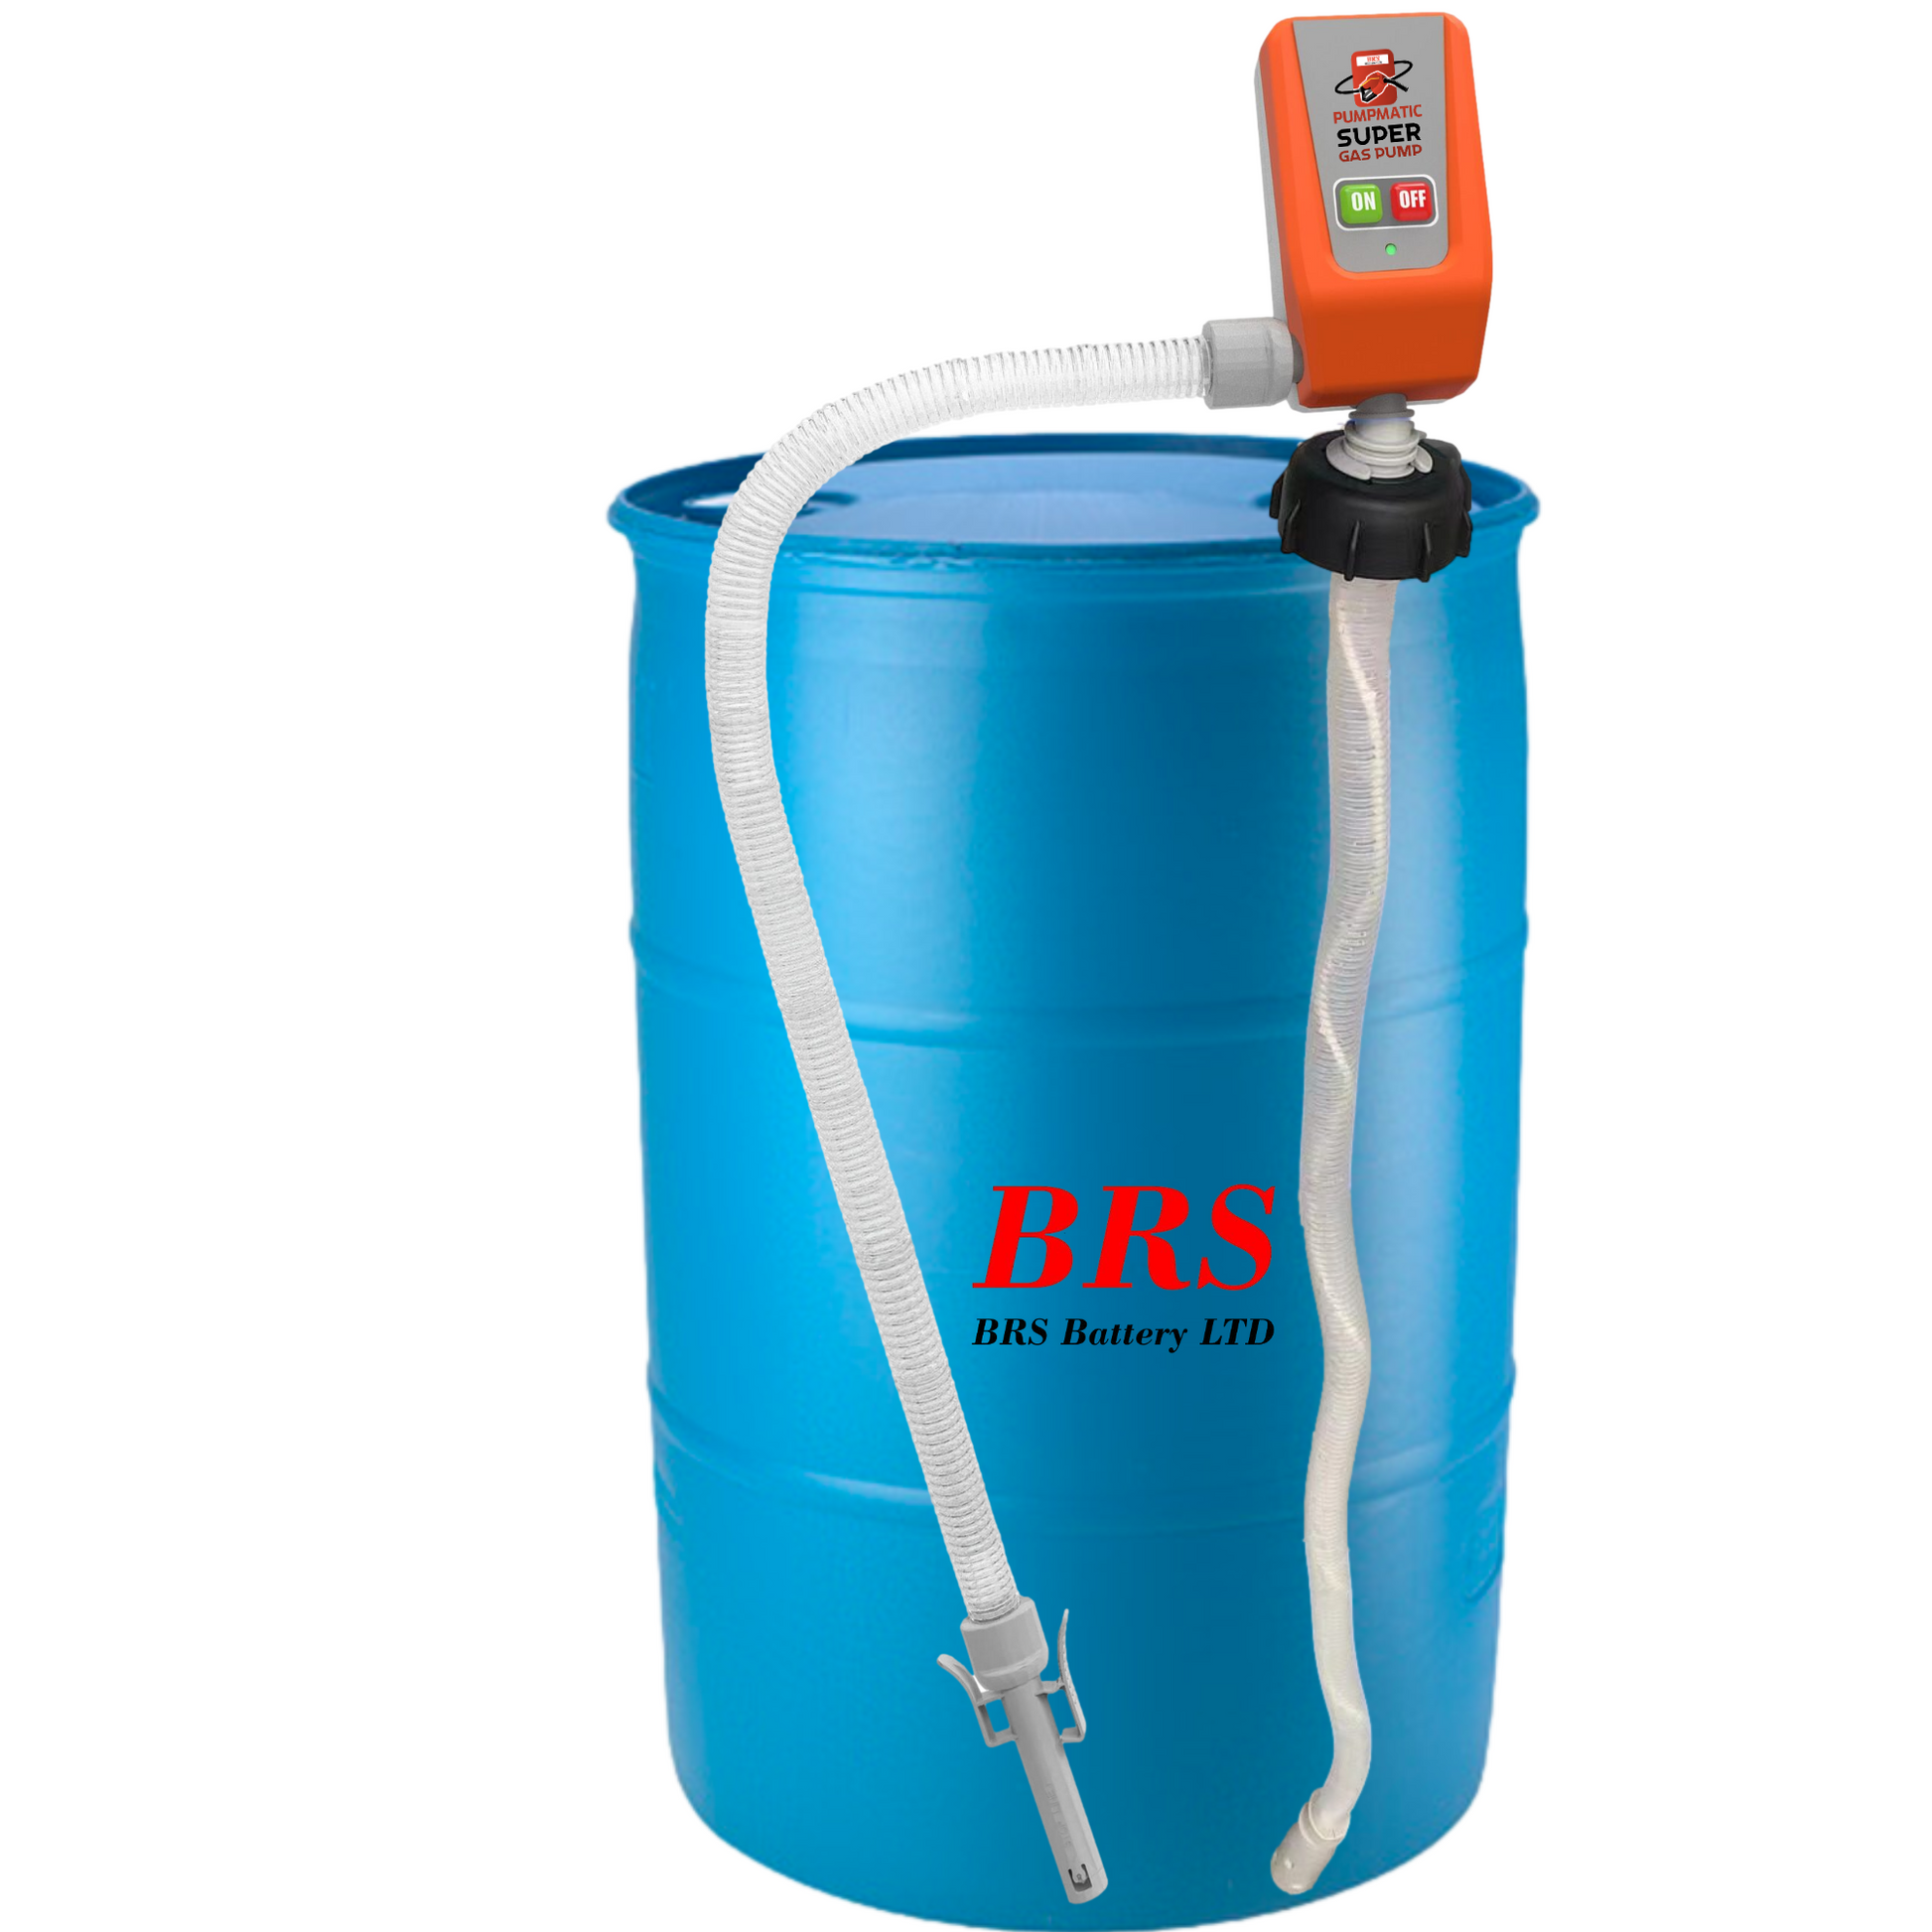 45 Gallon Drum Barrel Pump - Pumpmatic Super Drum Pump – BRS Super Pumps